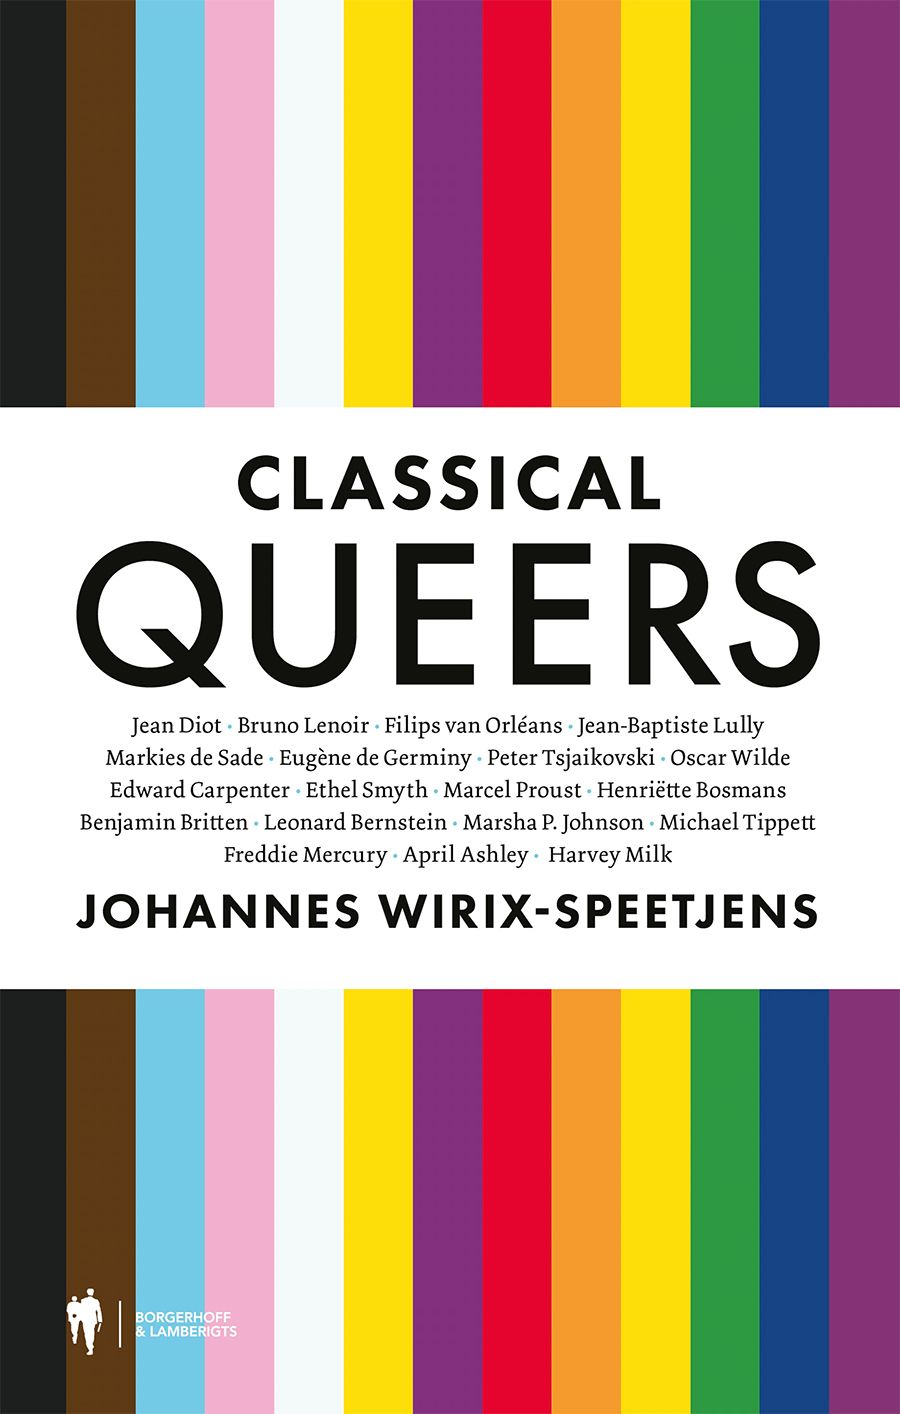 Wirix-Speetjens, Johannes - Classical queers